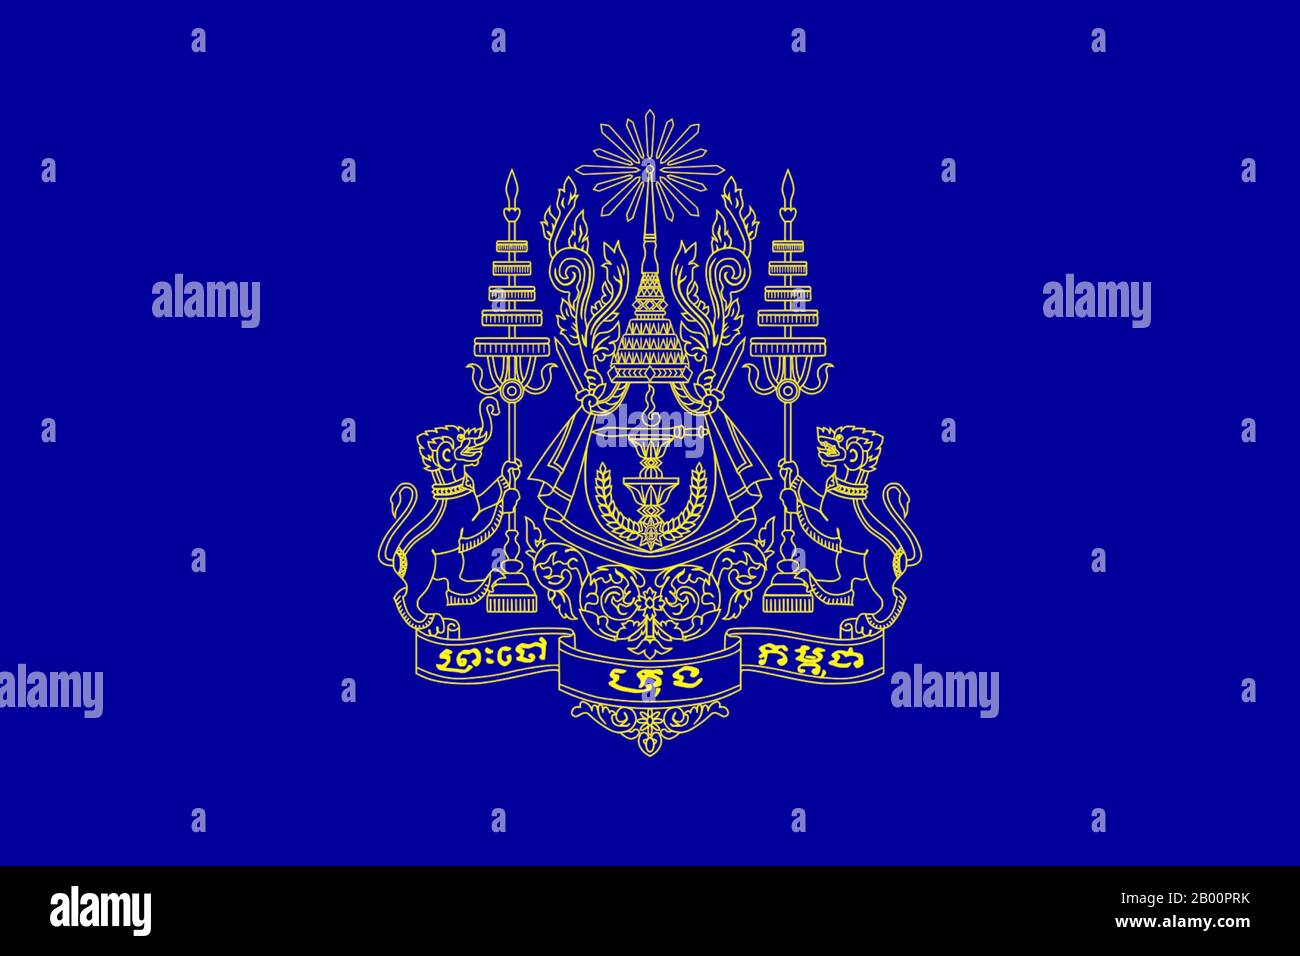 Cambodge: Norme royale du roi du Cambodge (1993 - suite). Sodcan (licence CC BY 2.0). La norme royale du Cambodge porte les armoiries royales sur un champ bleu foncé. Sur les armoiries se trouvent deux animaux qui sont un gajasingha (un lion avec un tronc d'éléphant) à gauche, et un singha, ou un lion, à droite. Les animaux sont soutenus par deux parapluies royaux à cinq niveaux. Entre les deux, une couronne royale avec un rayon de lumière au sommet. Banque D'Images